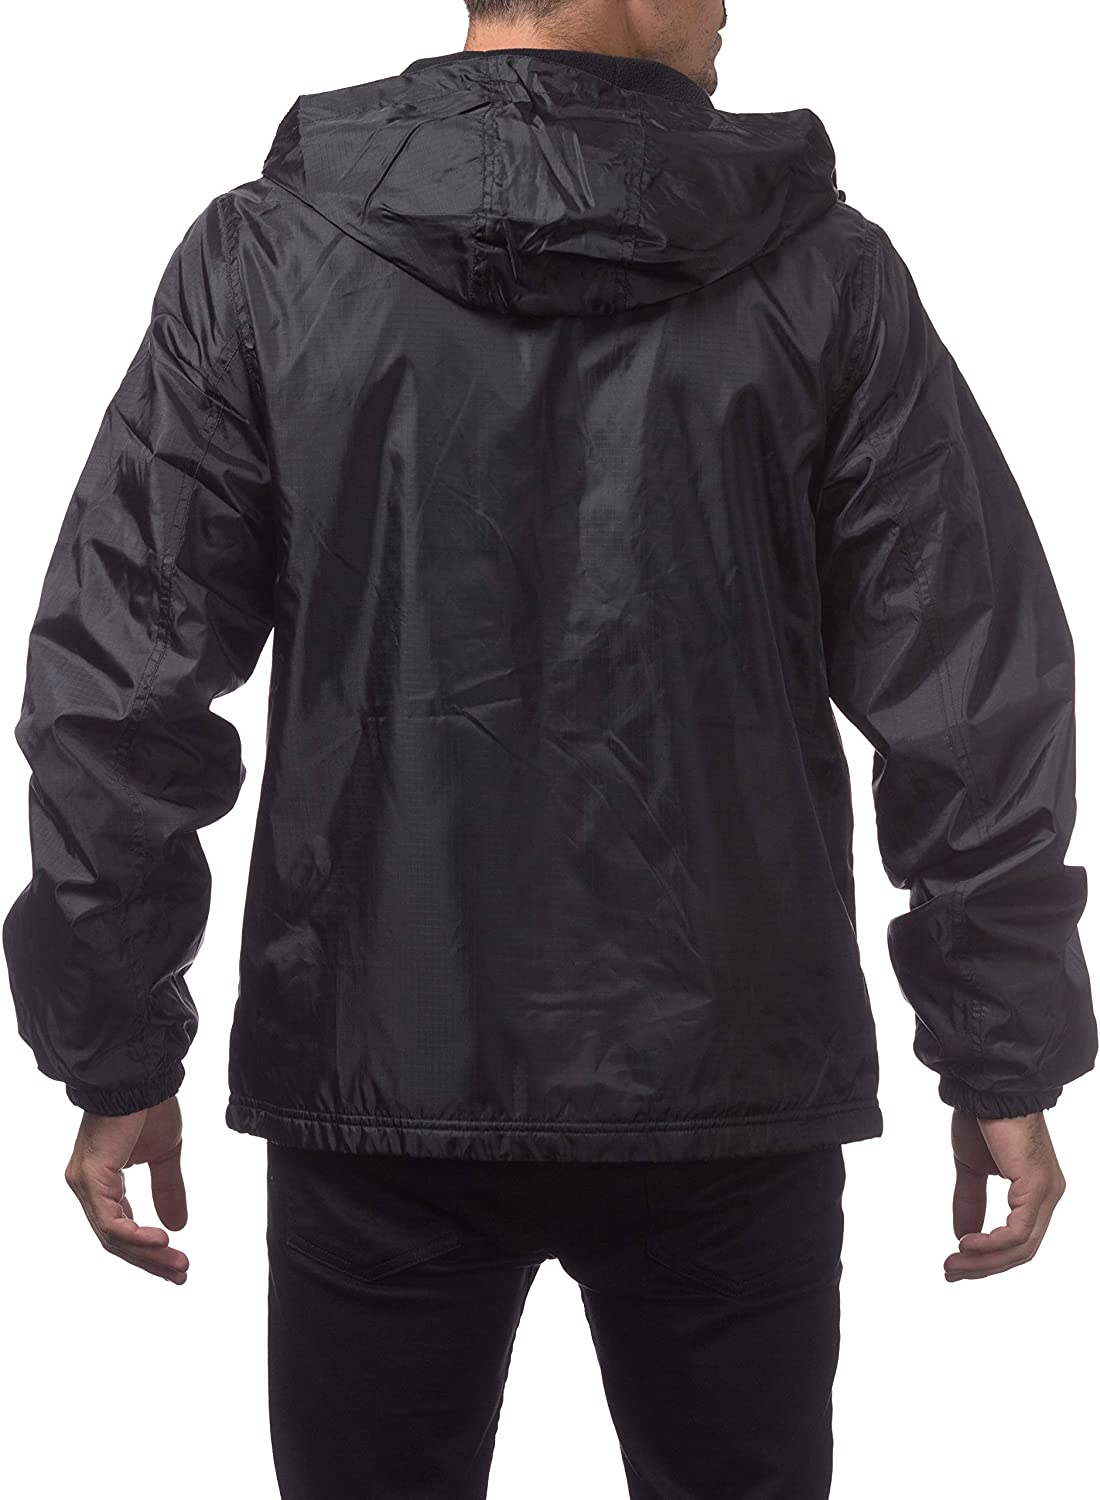 Pro Club Fleece Lined Windbreaker Jacket | eBay